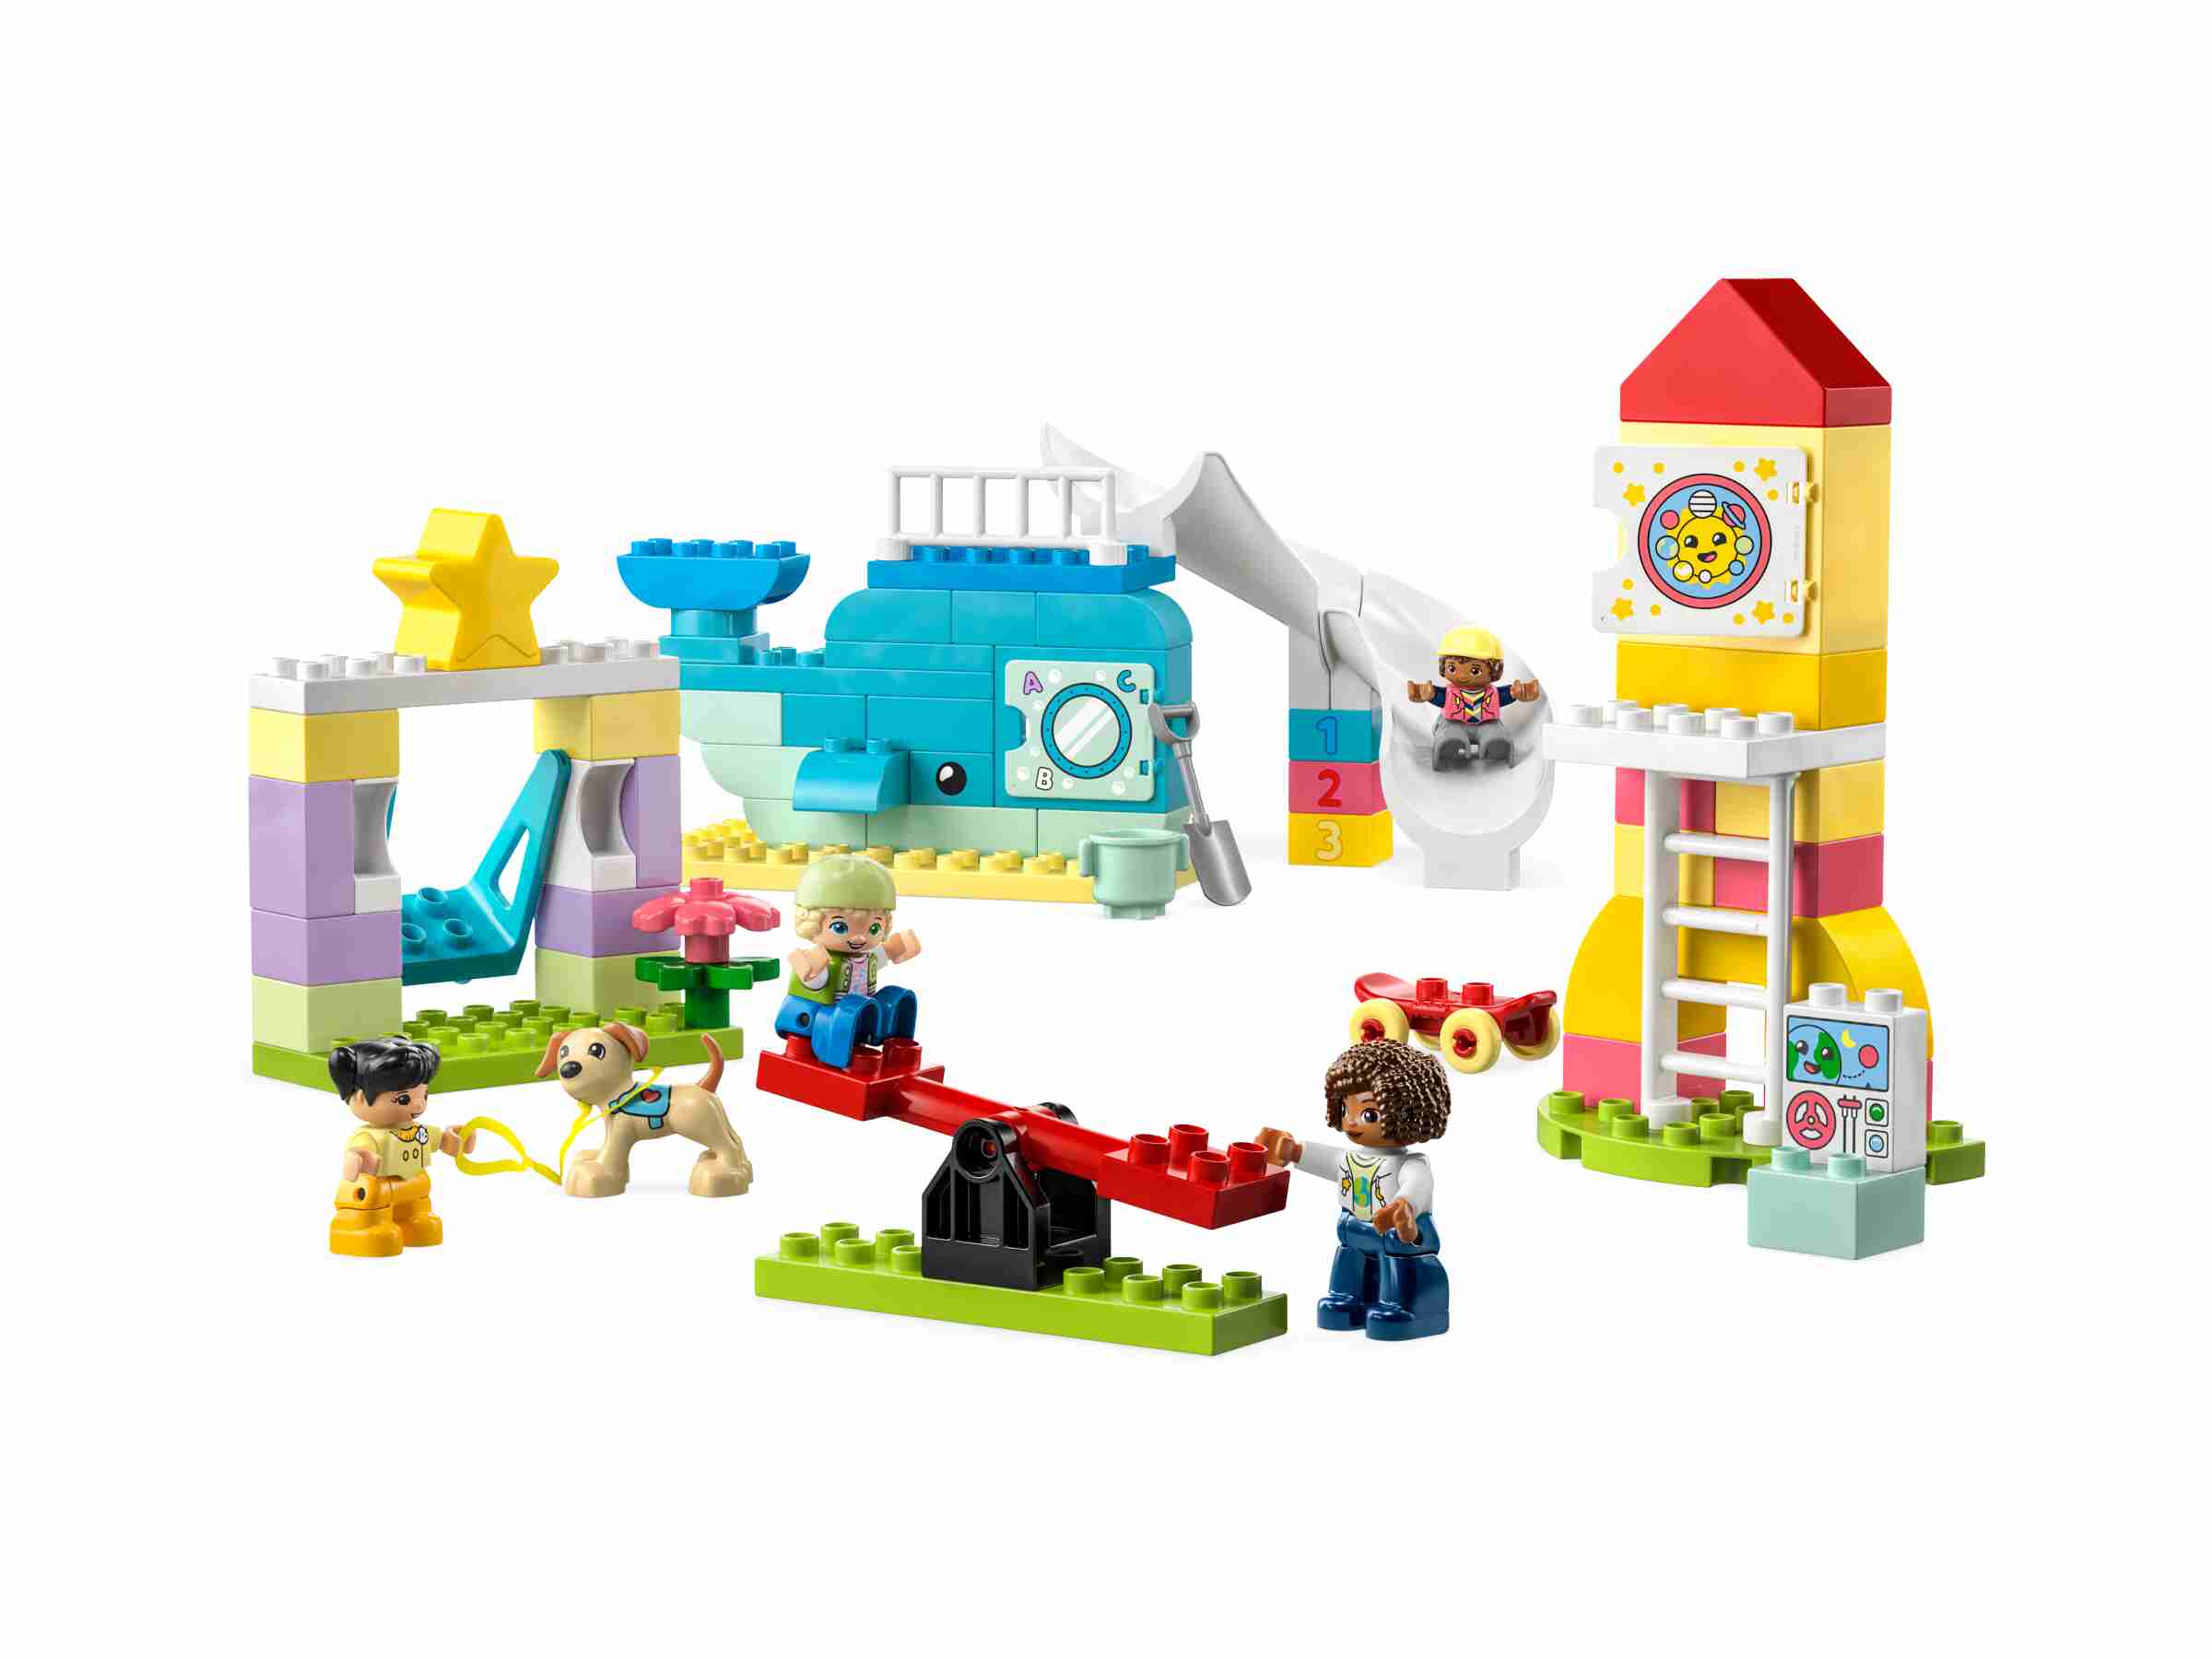 LEGO 10991 DUPLO Traumspielplatz, 5 Figuren, Karussel, Rutsche, Schaukel